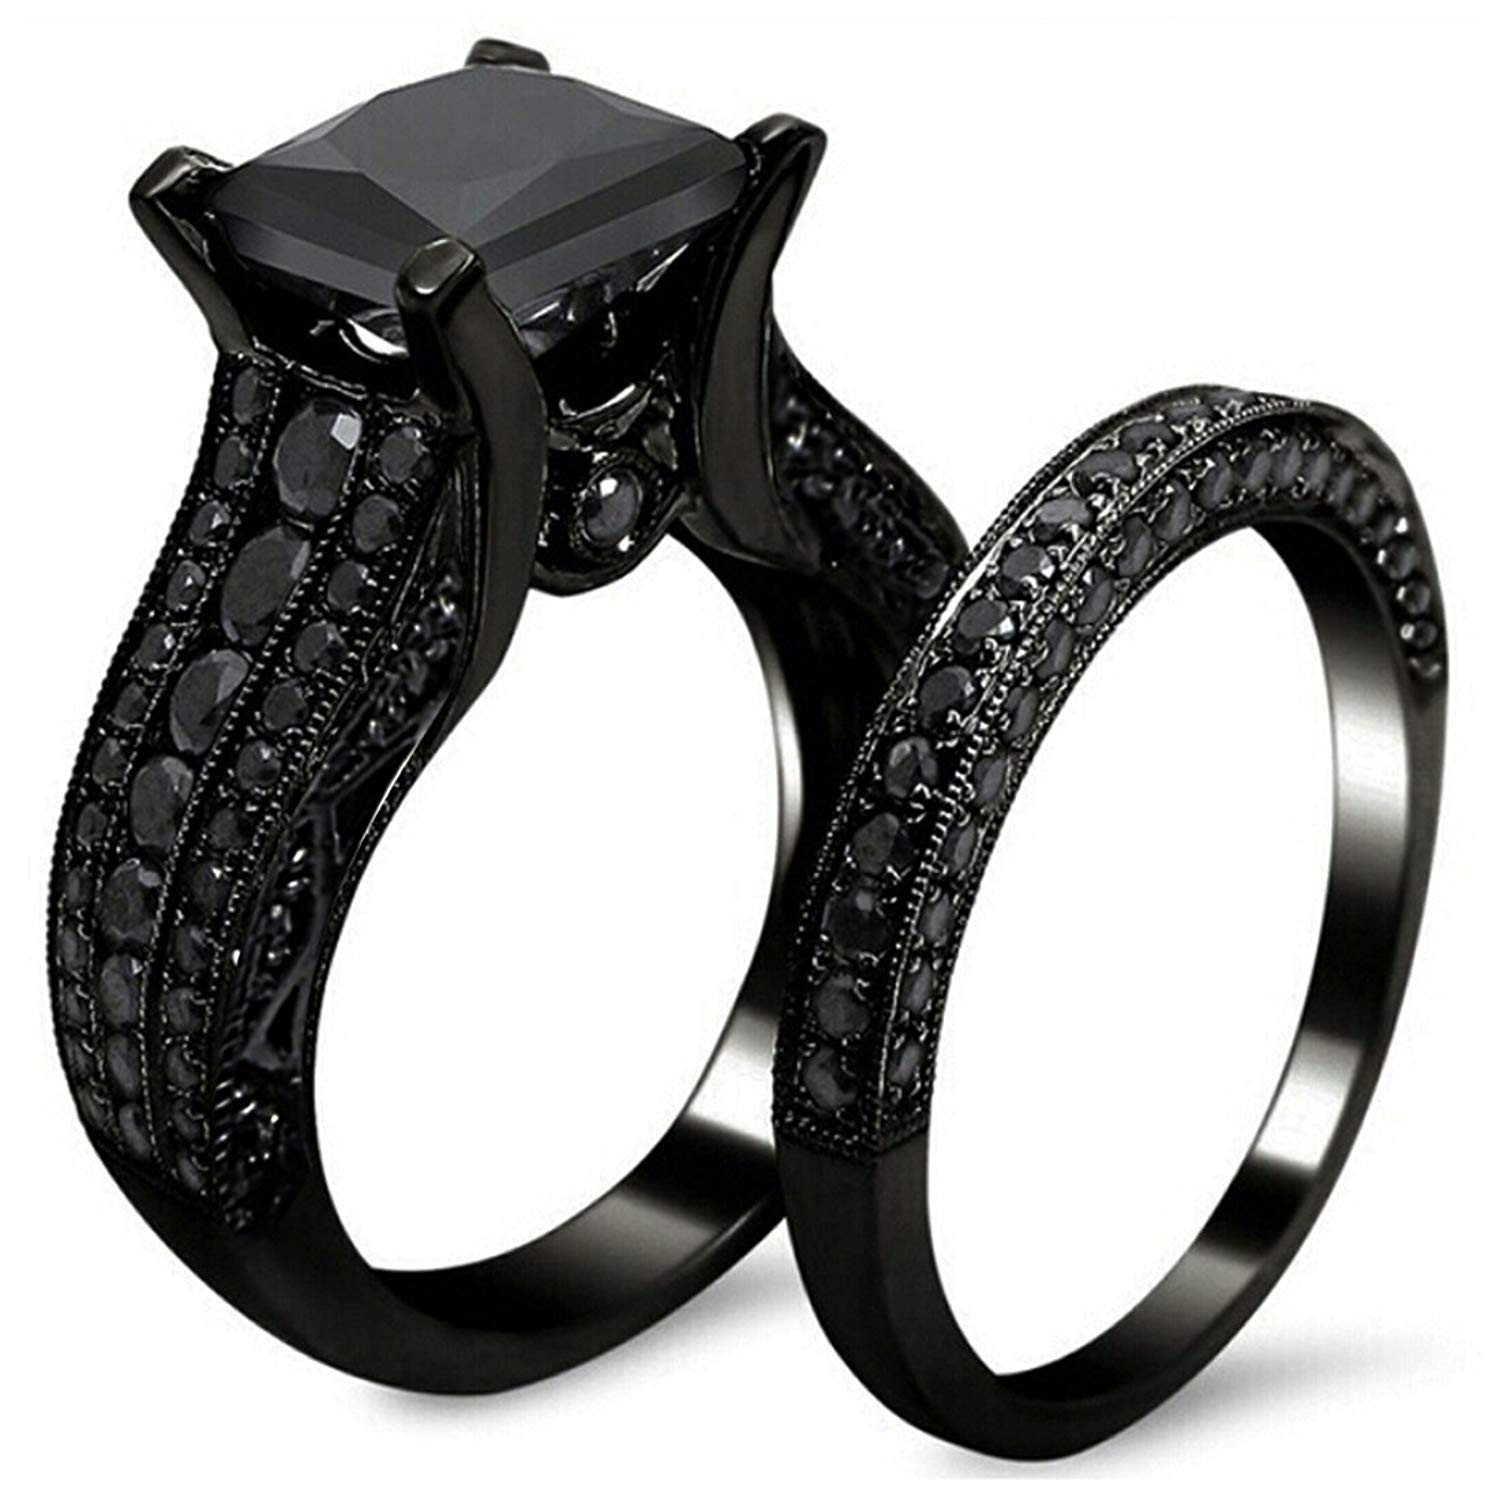 Black Band Wedding Rings
 women s gothic retro black gold wedding engagement band